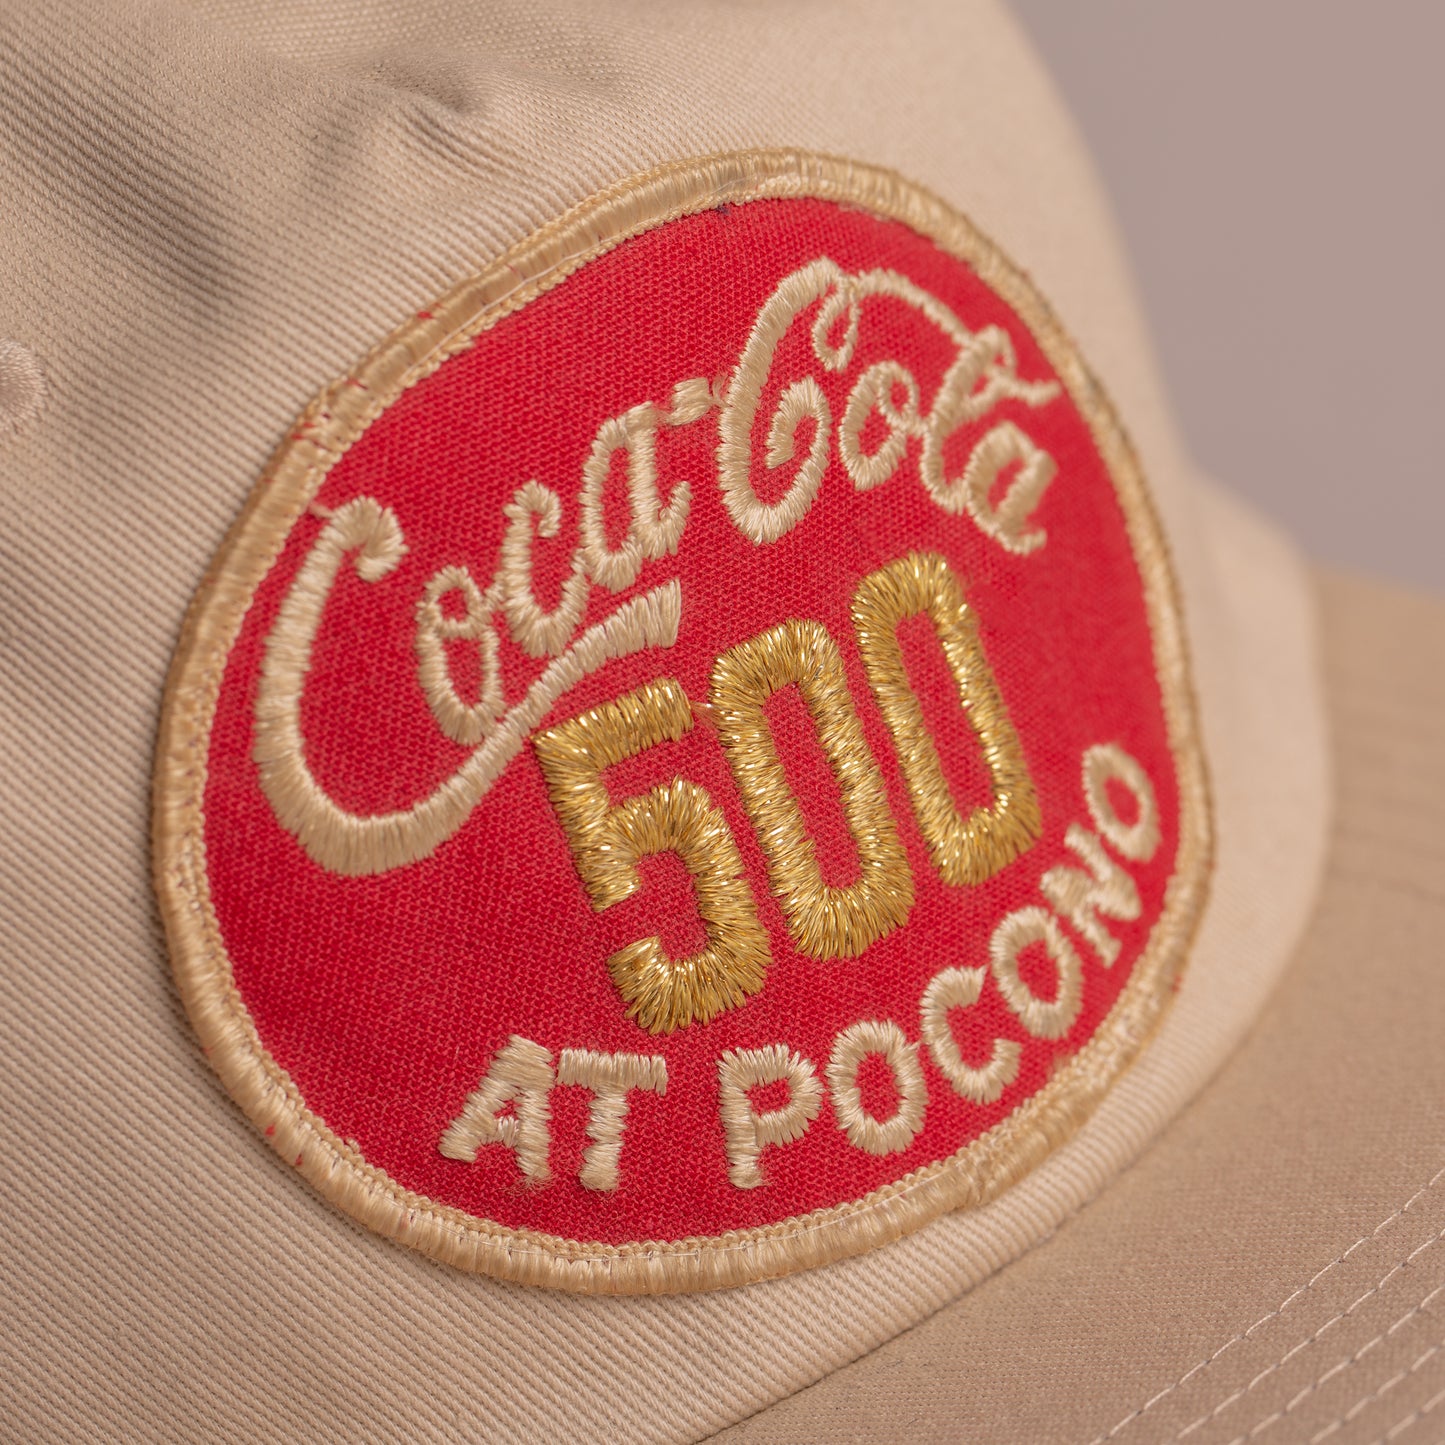 Coca-Cola 500 at Pocono